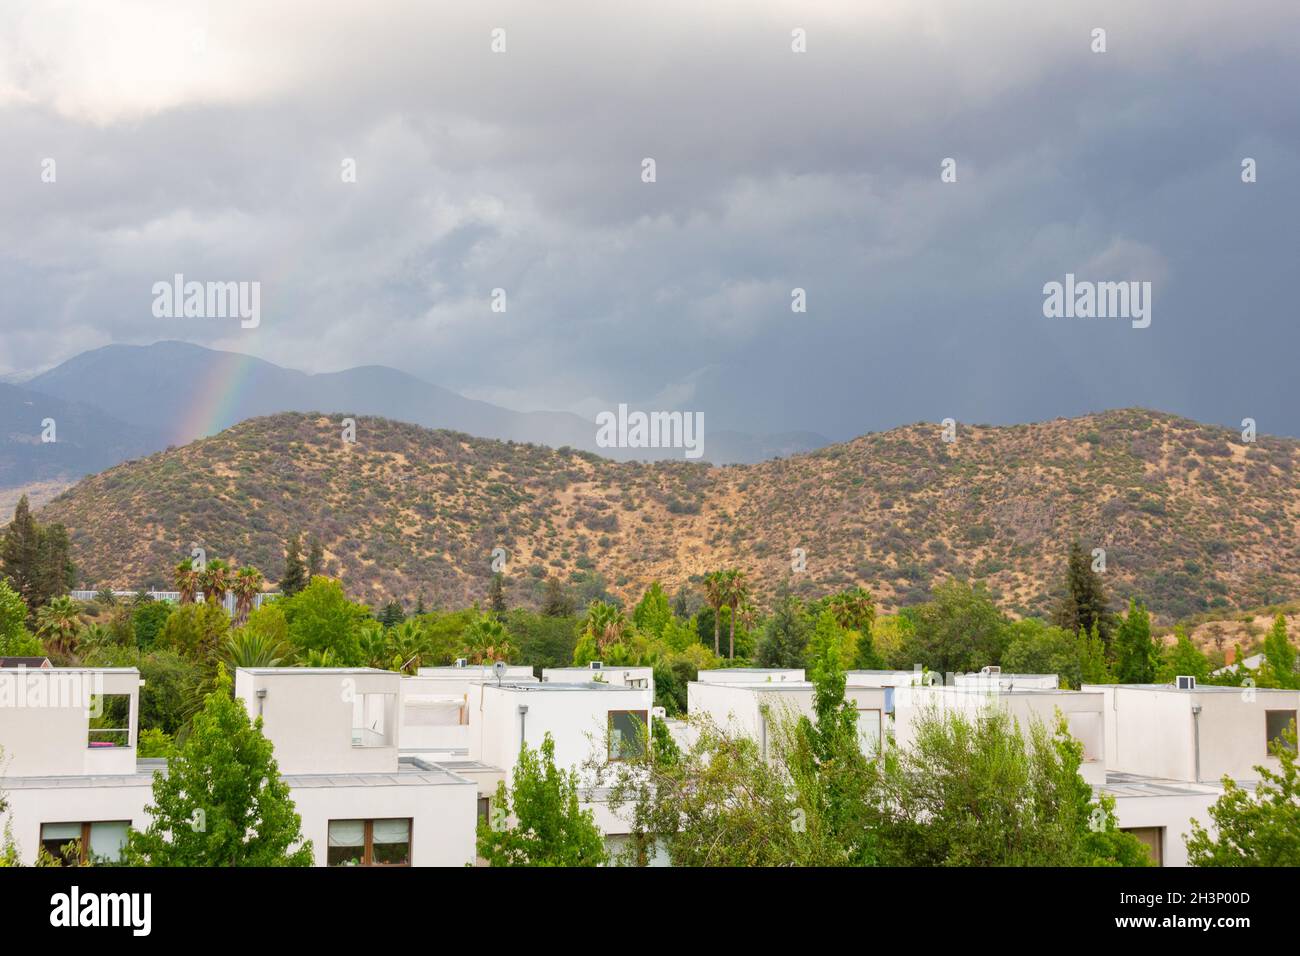 Arc-en-ciel coloré se cachant derrière les montagnes dans la zone résidentielle au ciel nuageux.Concept de paysage naturel menaçant les tempêtes Banque D'Images